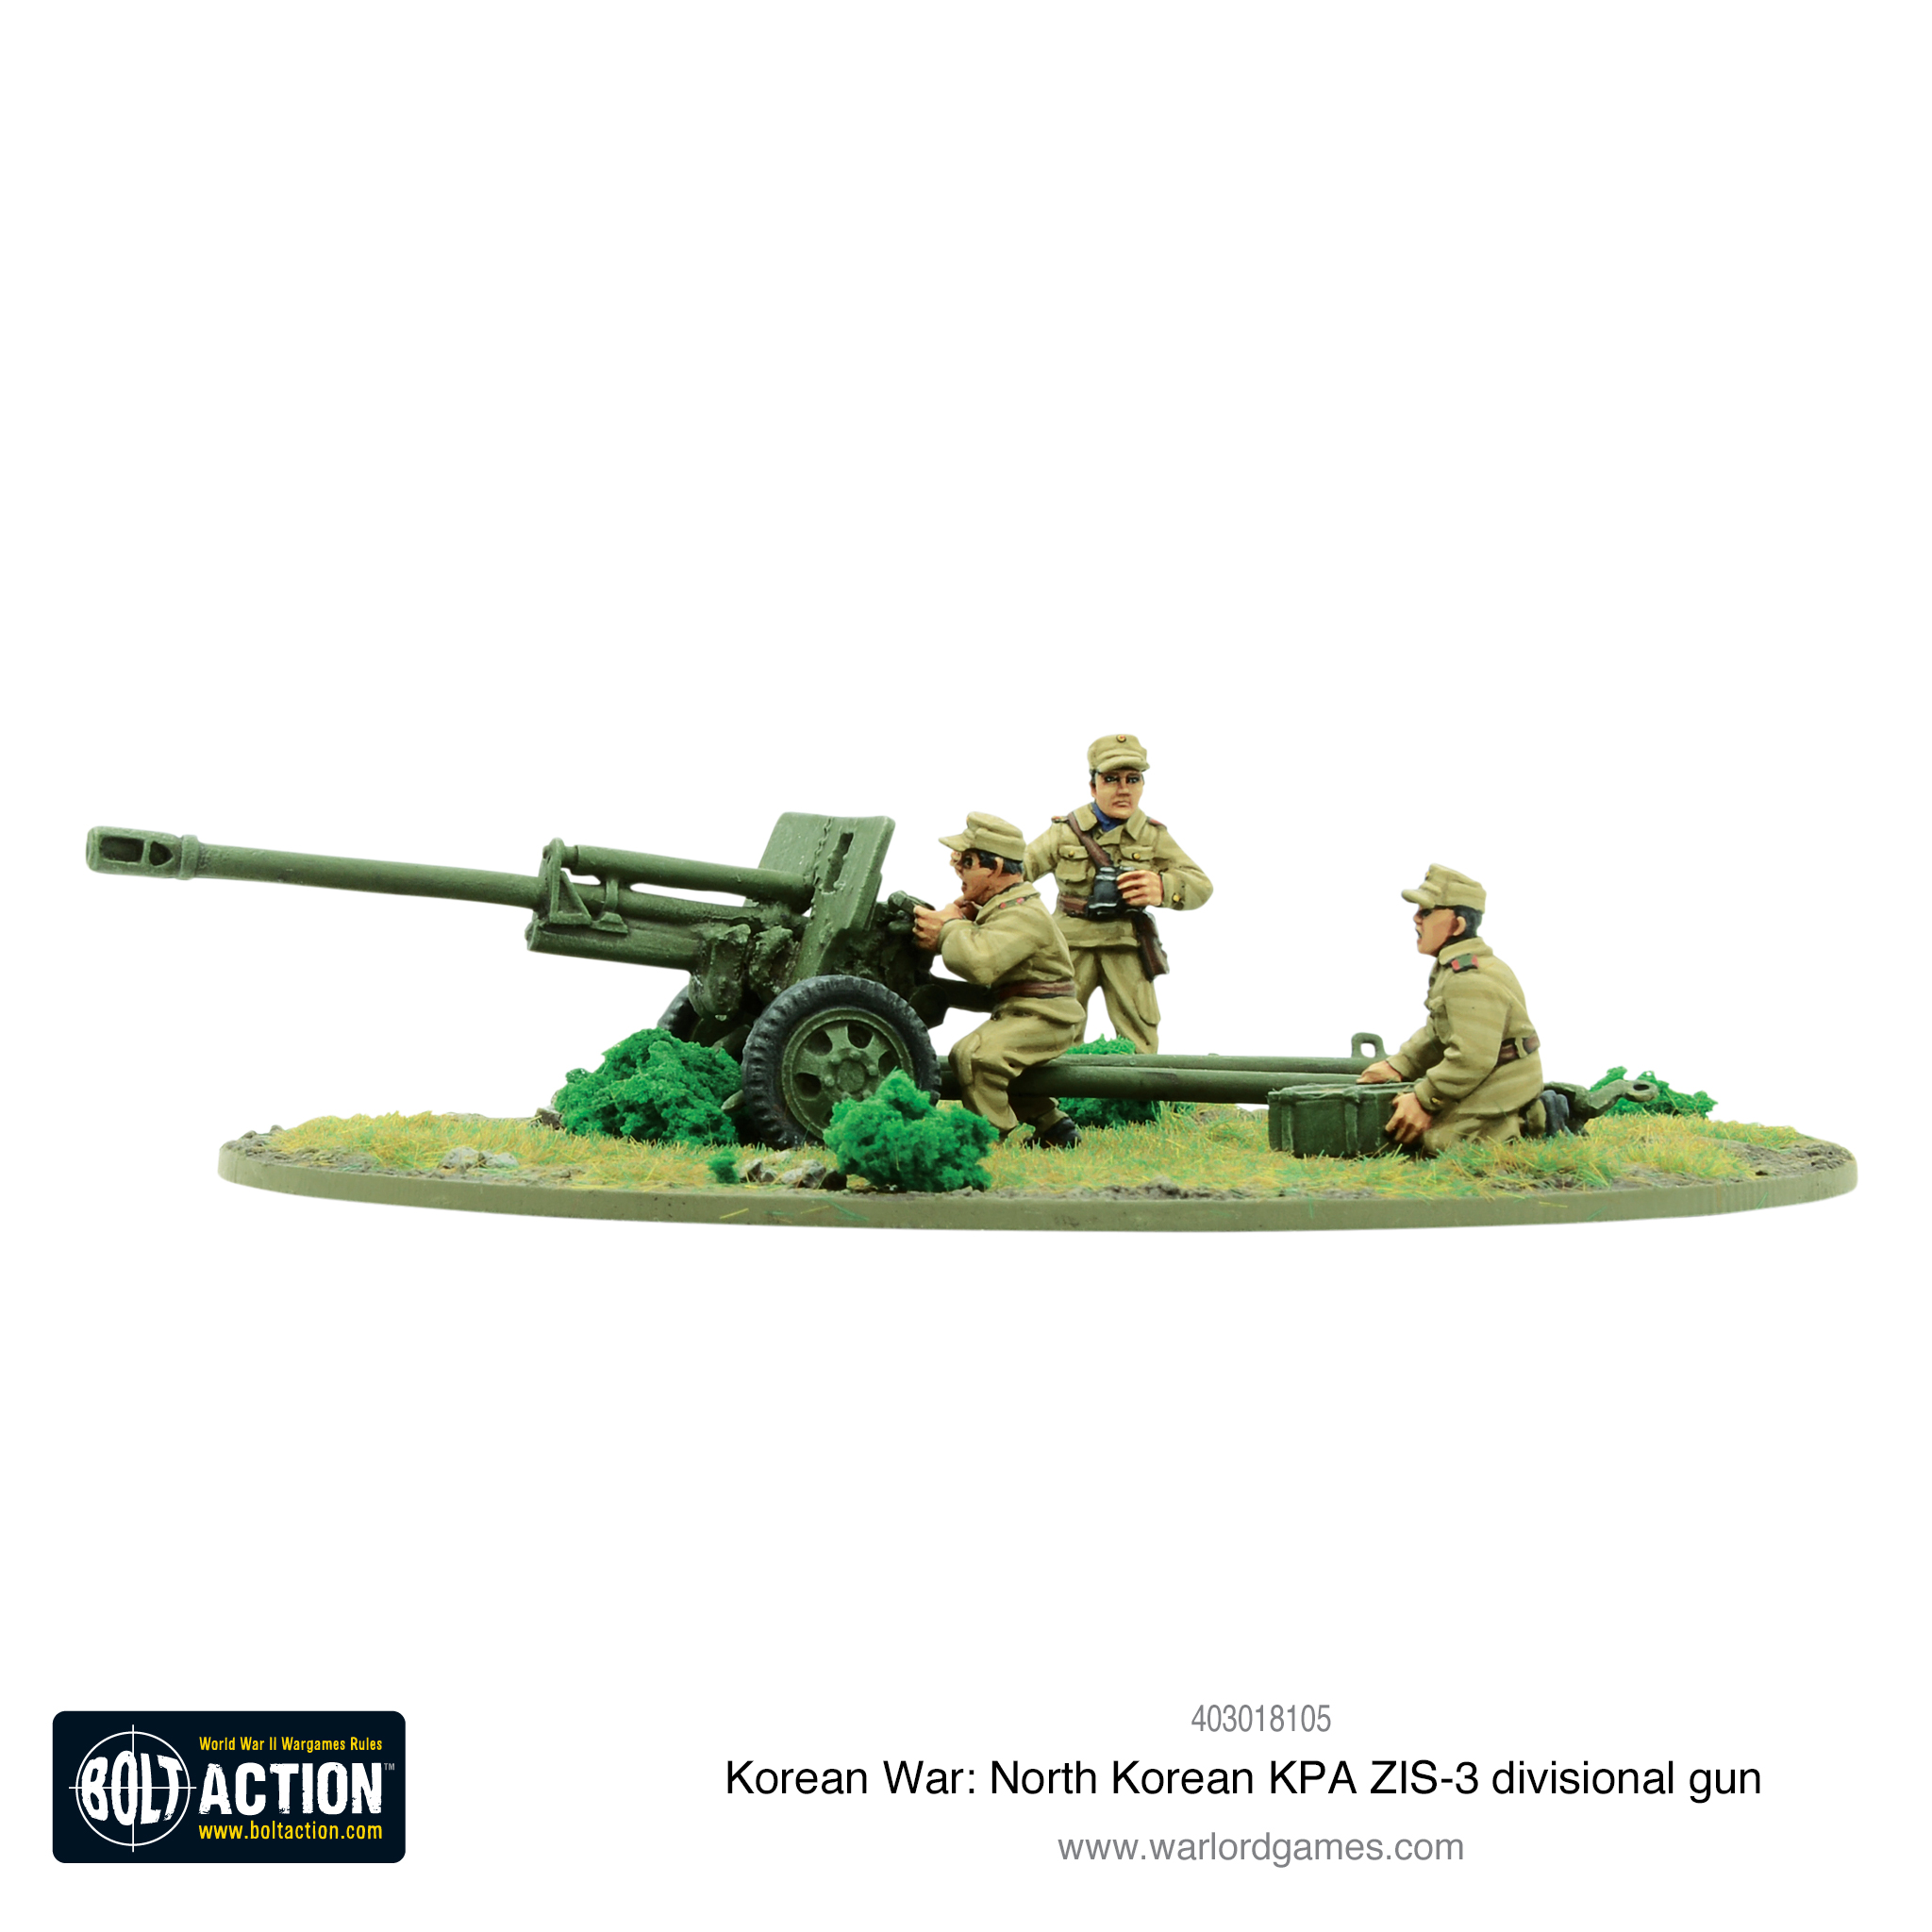 North Korean KPA ZIS-3 divisional gun